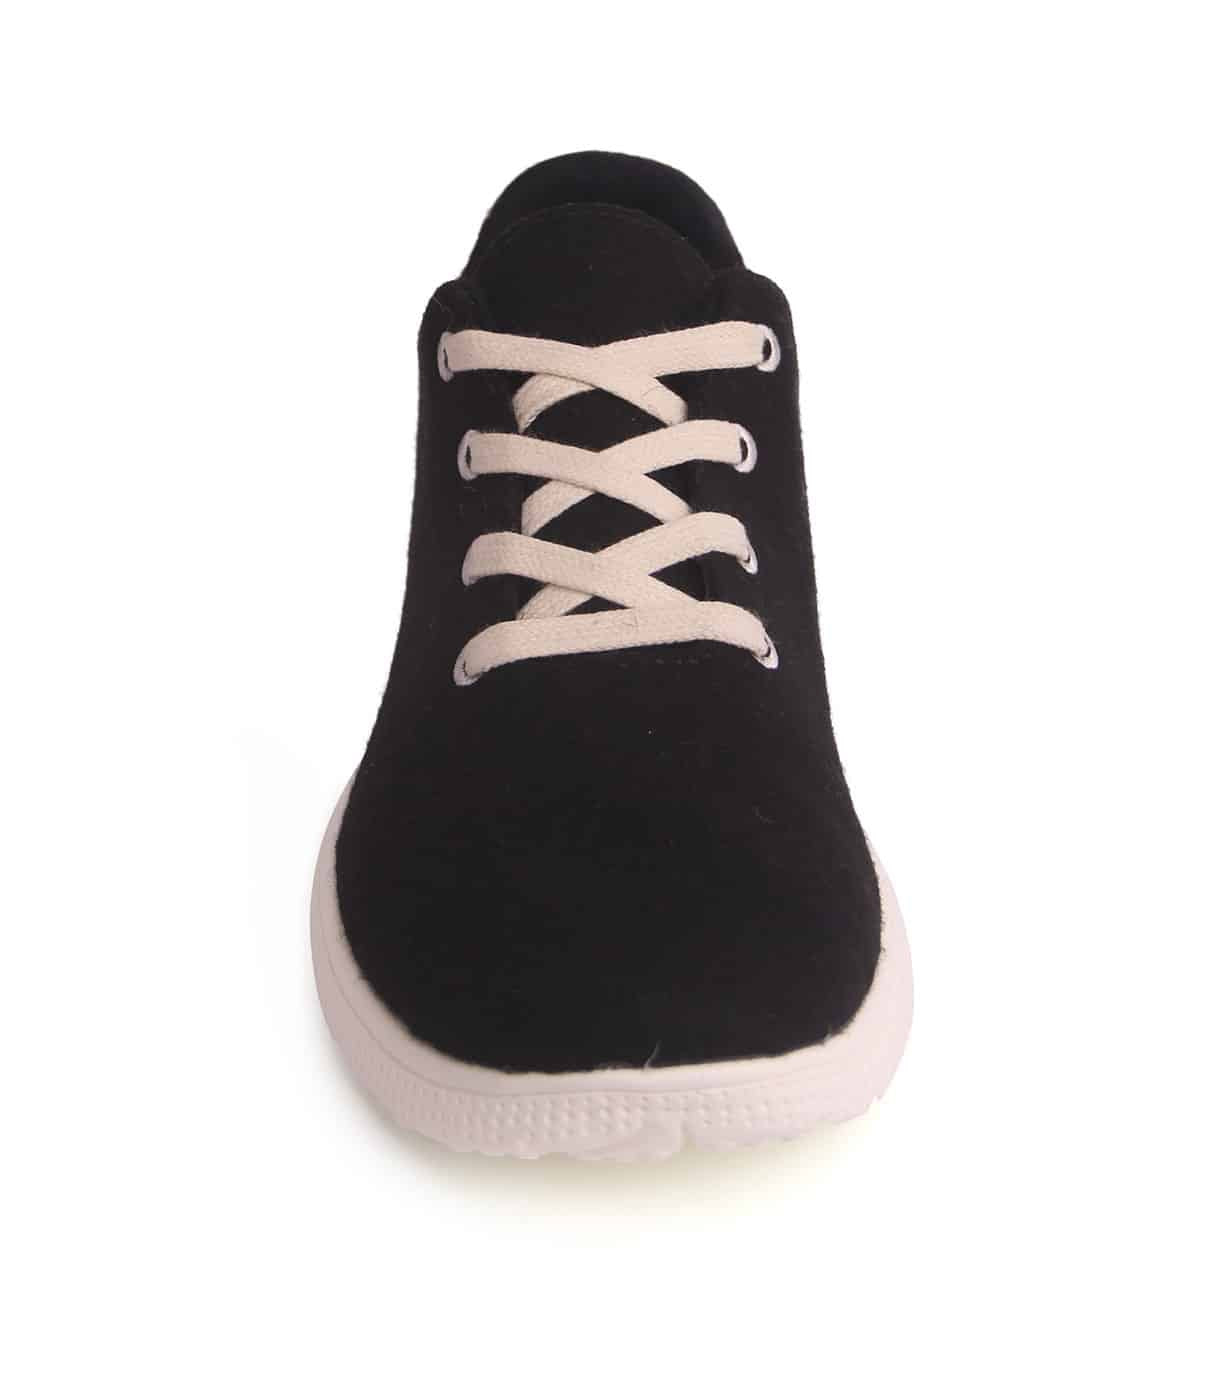 Egos Shoes Merino Wool Sneaker Black